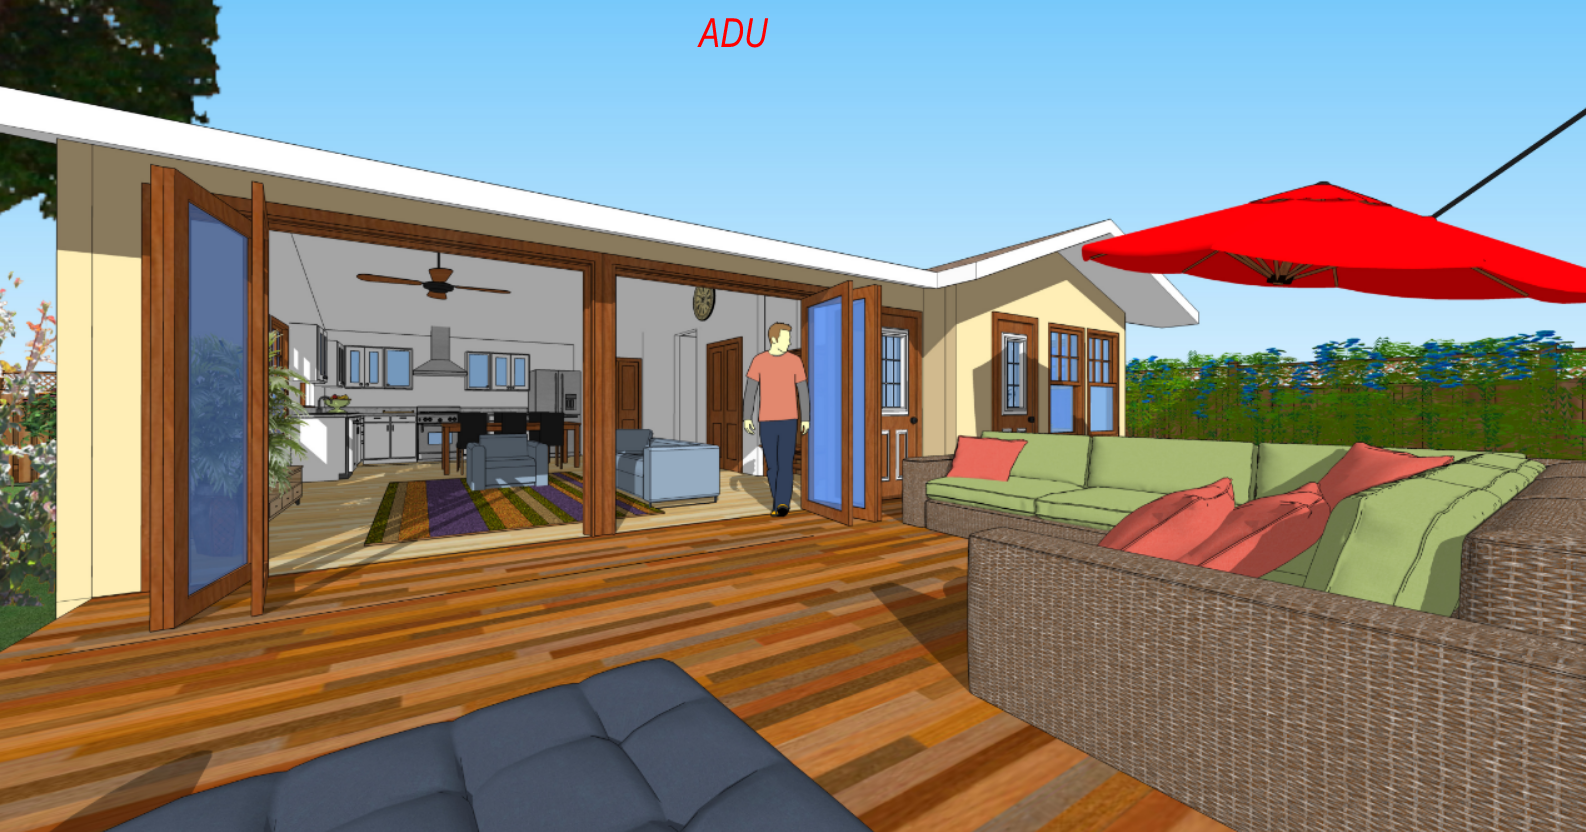 ADU rendering2.png